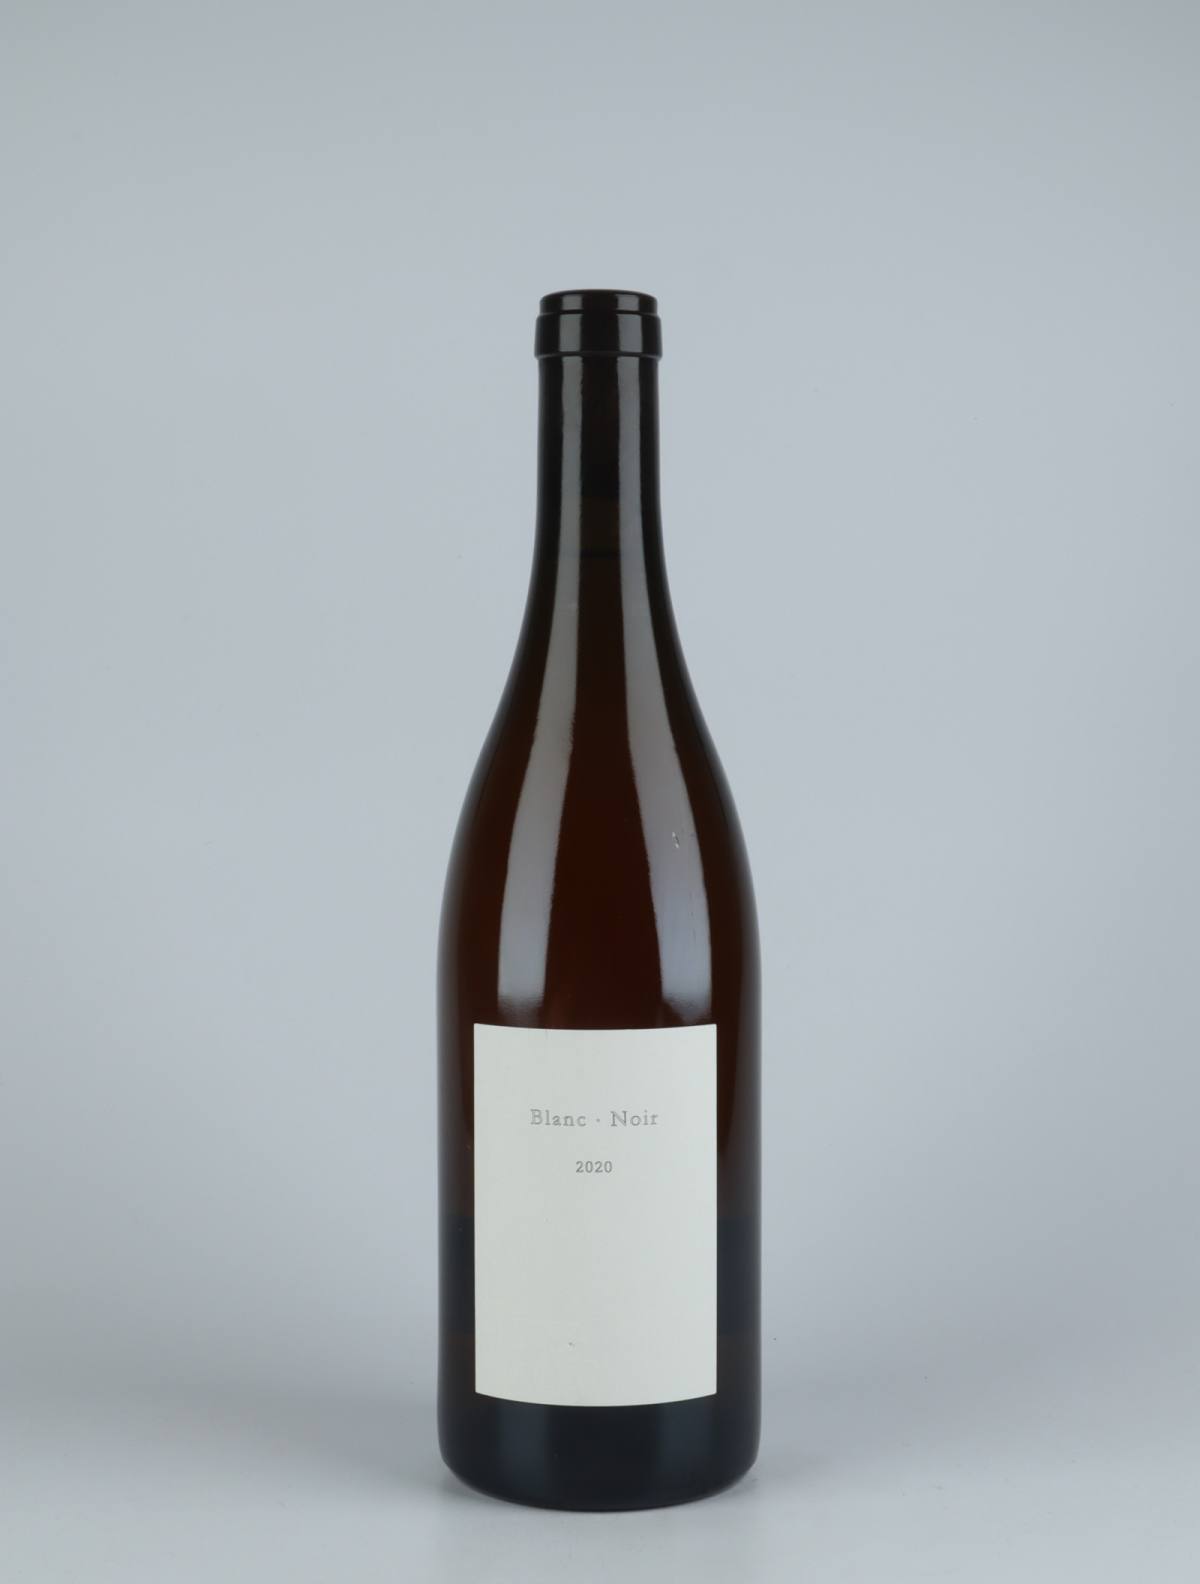 En flaske 2020 Blanc.Noir Hvidvin fra Les Frères Soulier, Rhône i Frankrig